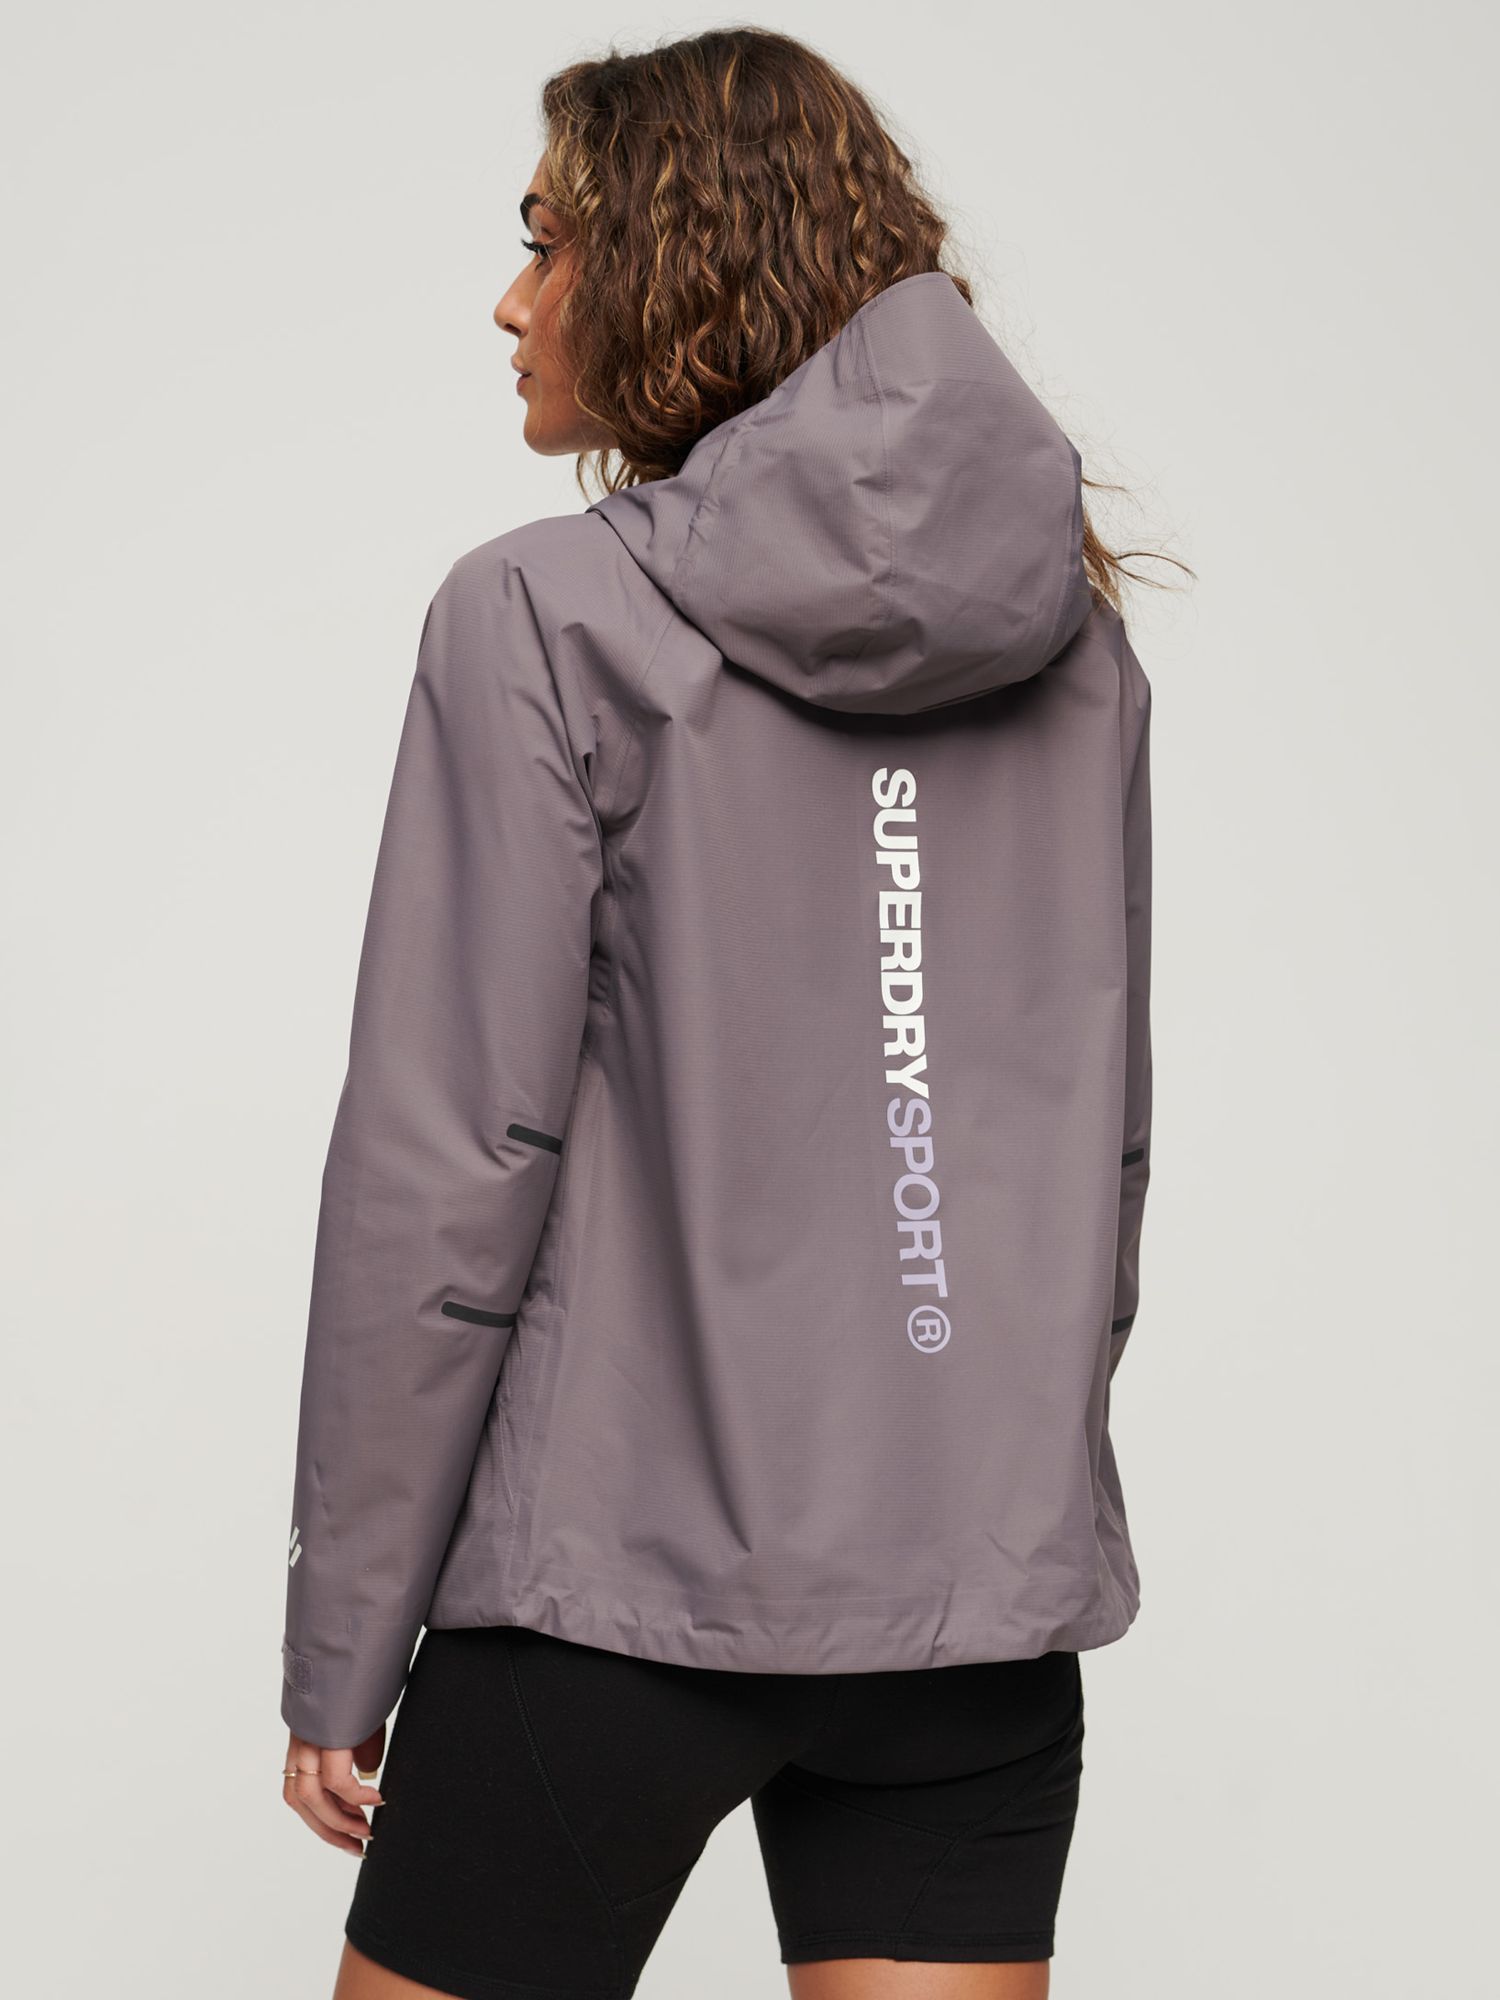 Superdry Waterproof Jacket - Women's Womens Jackets